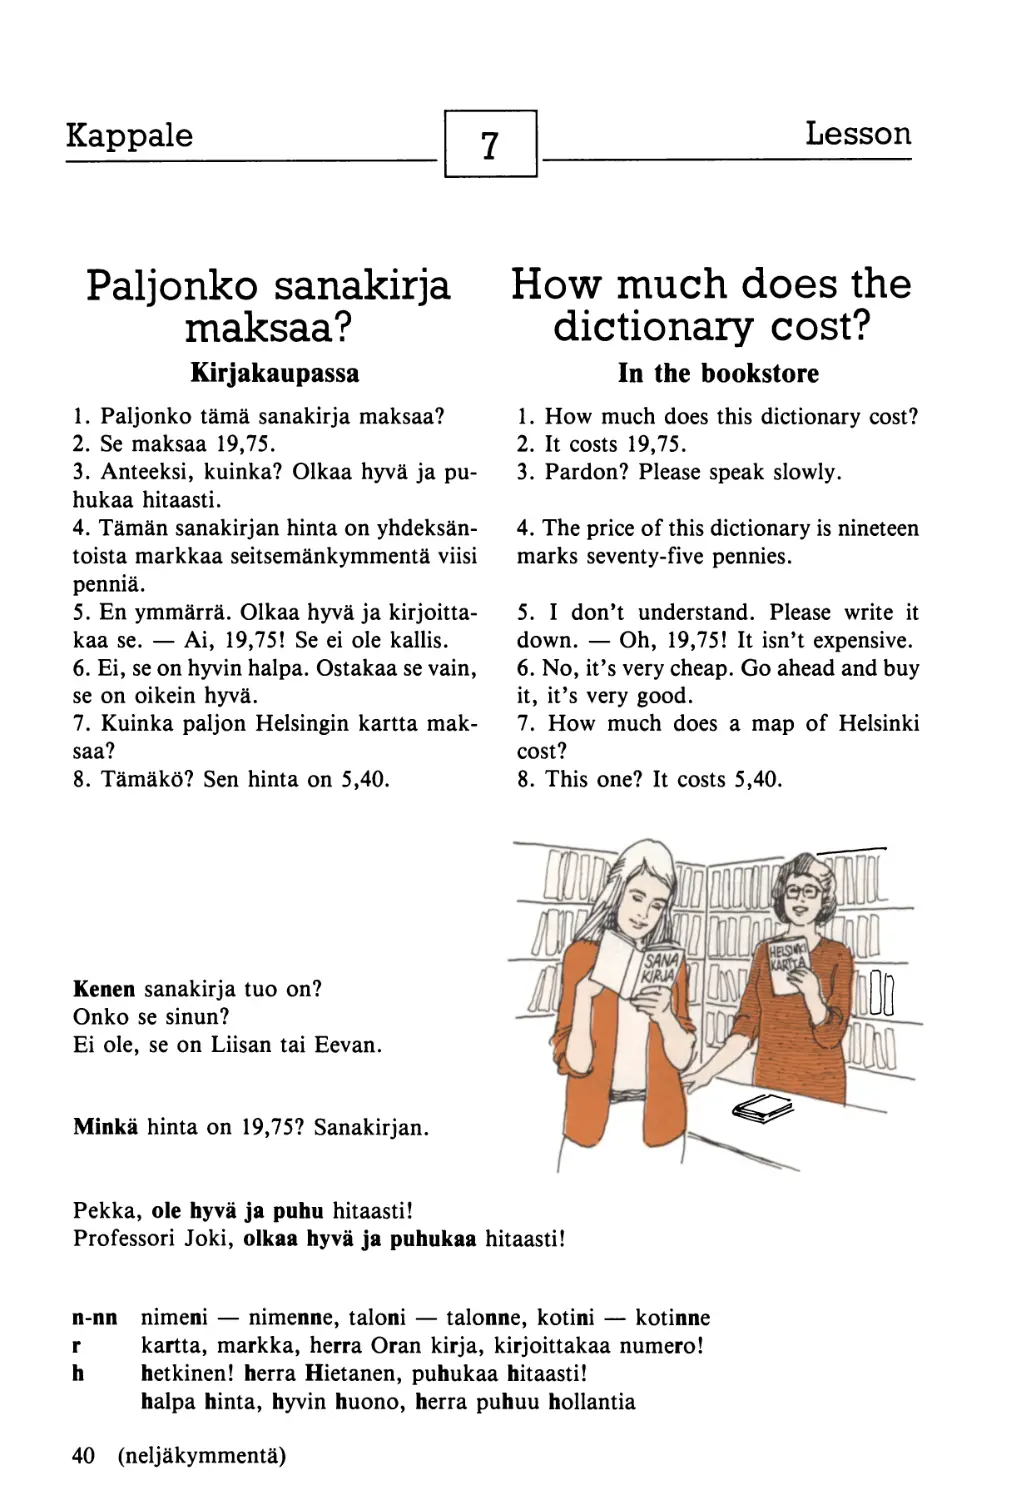 7. Paljonko sanakirja maksaa? — How much does the dictionary cost?